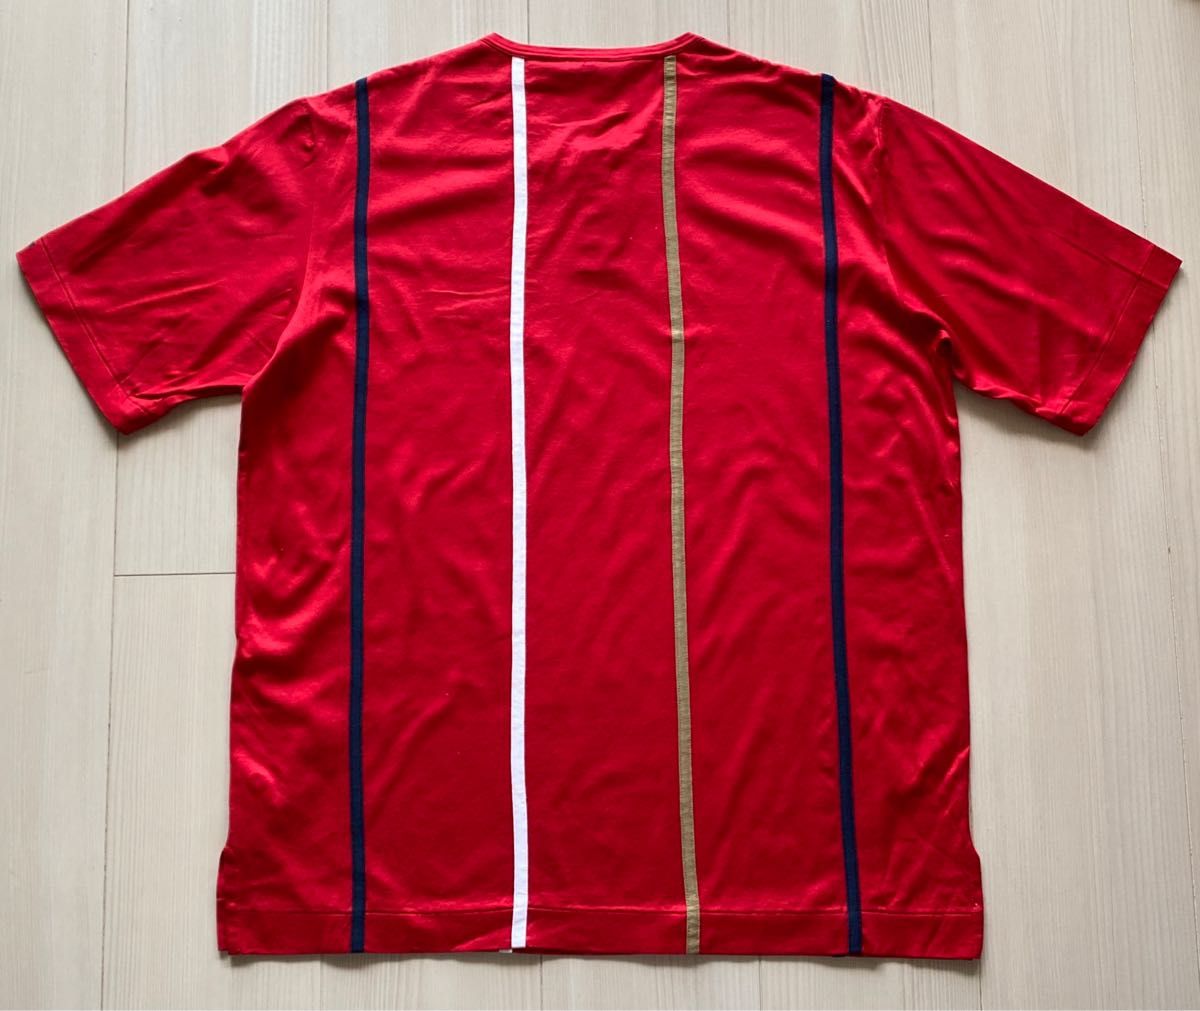 ライカ PIA SPORTS ピアスポーツ テープ 刺繍 コットン ヘンリーネック Tシャツ 日本製